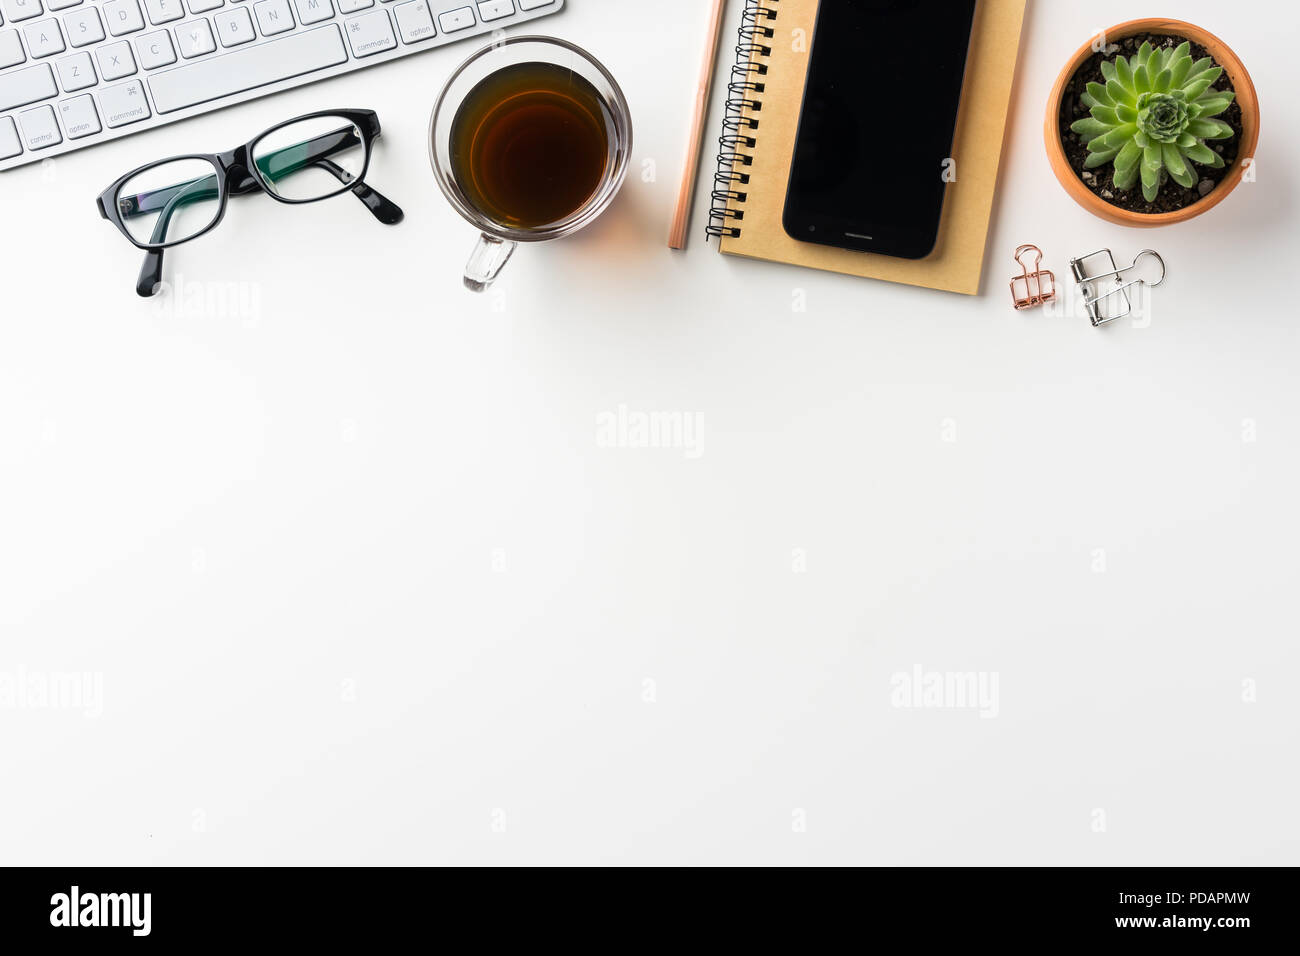 Business-Konzept - Draufsicht des weißen Desktophintergrund mit Notebook, Kaffee, Smartphone, Kakteen und Clip für Modell-design Stockfoto